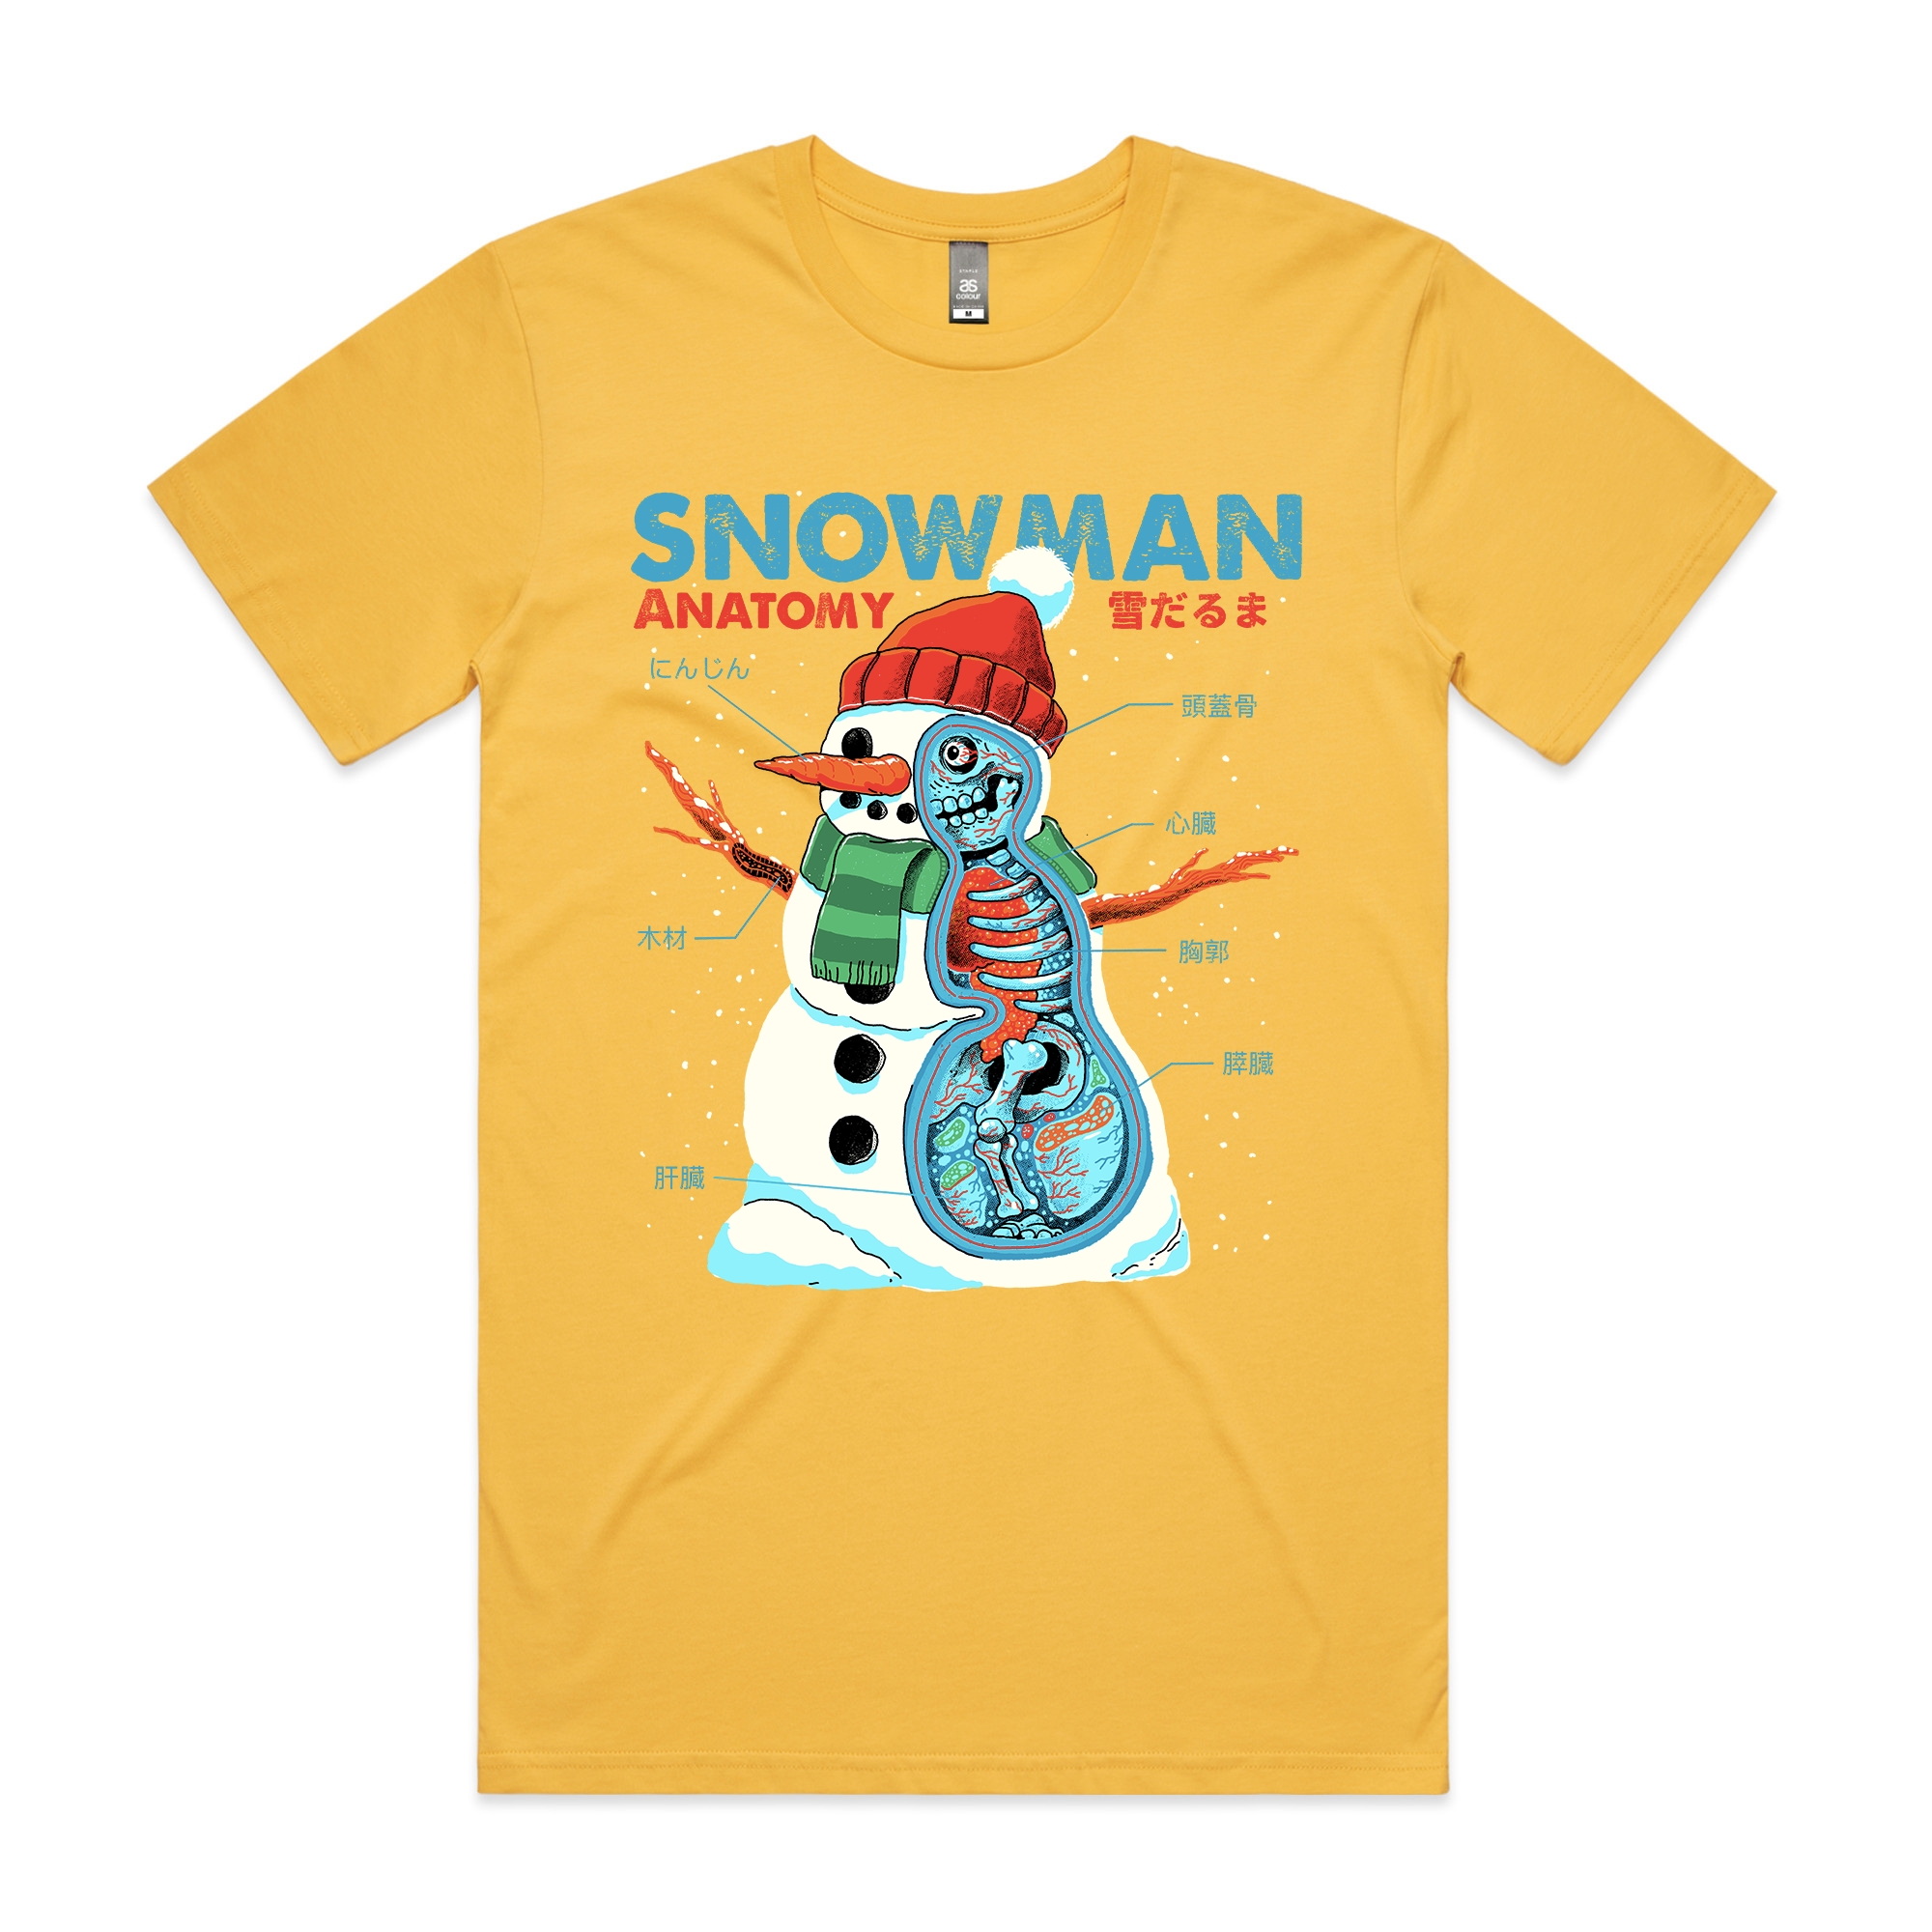 Snowman Anatomy Tee